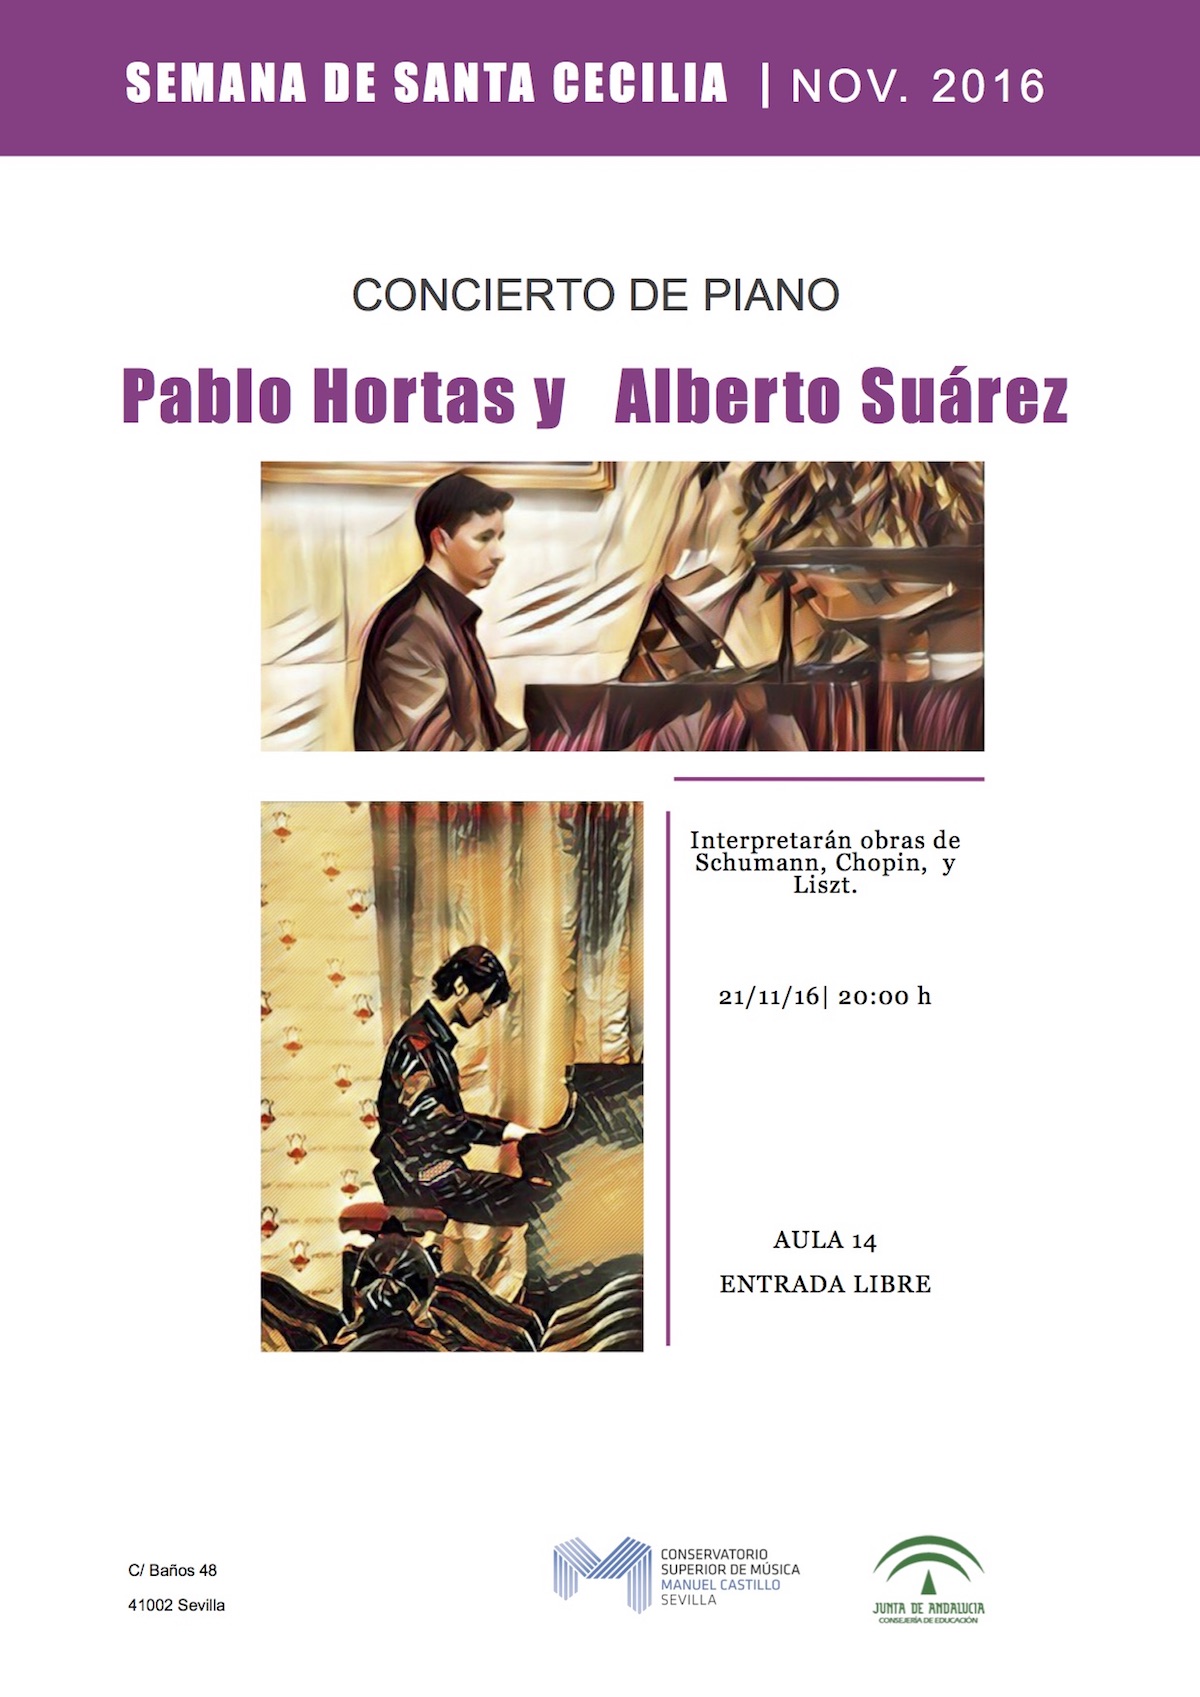 Pablo Hortas y Alberto Suárez